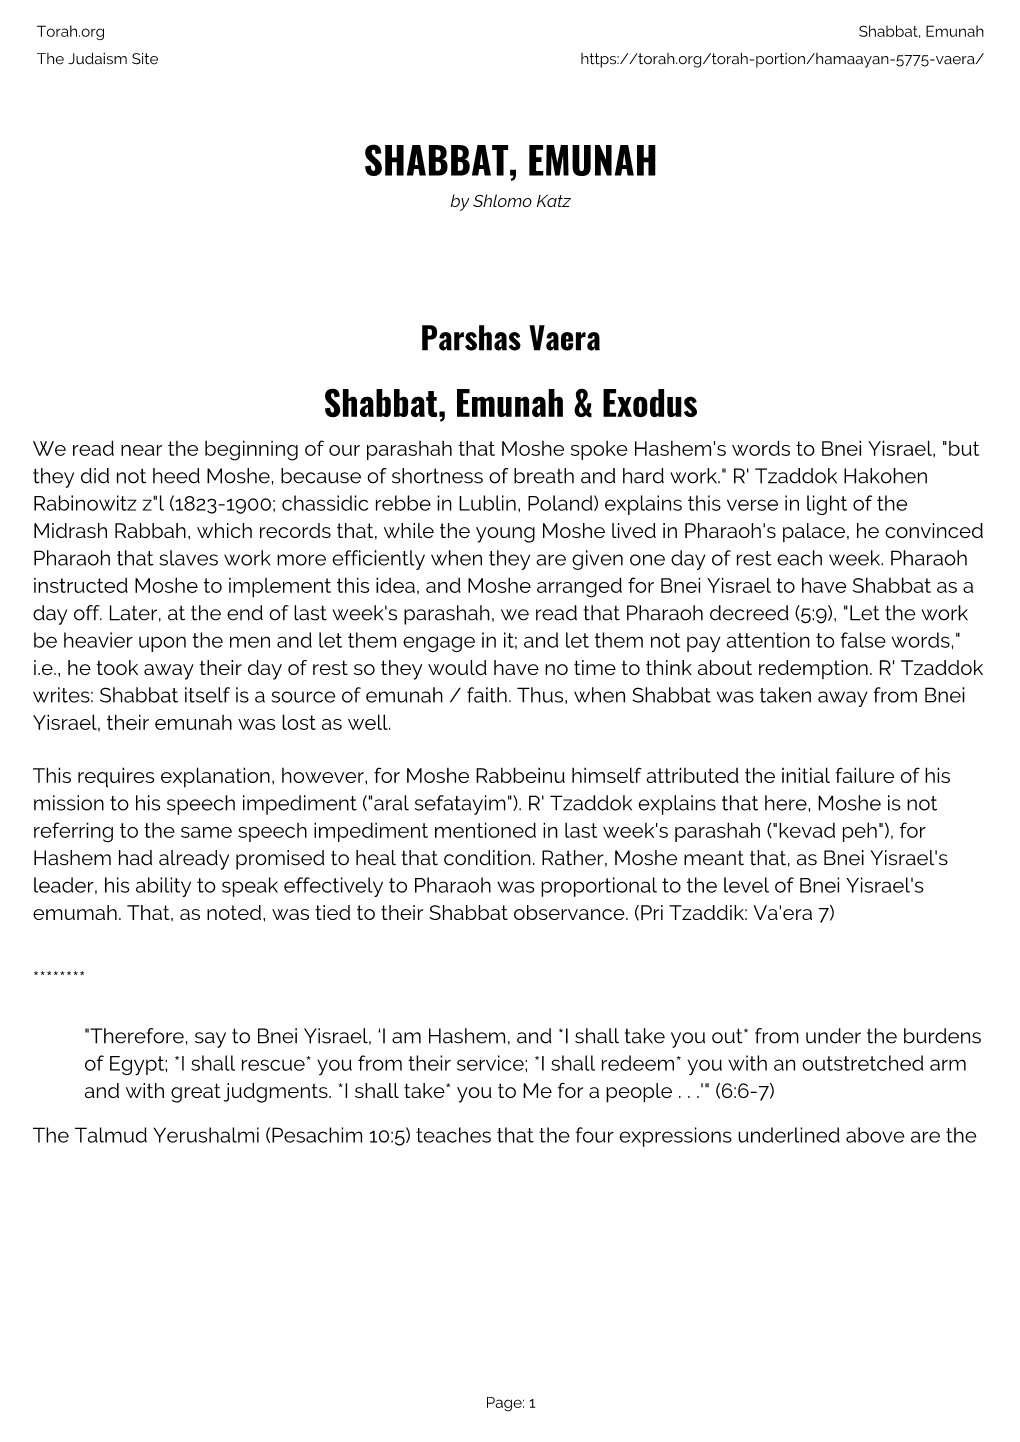 Shabbat, Emunah the Judaism Site